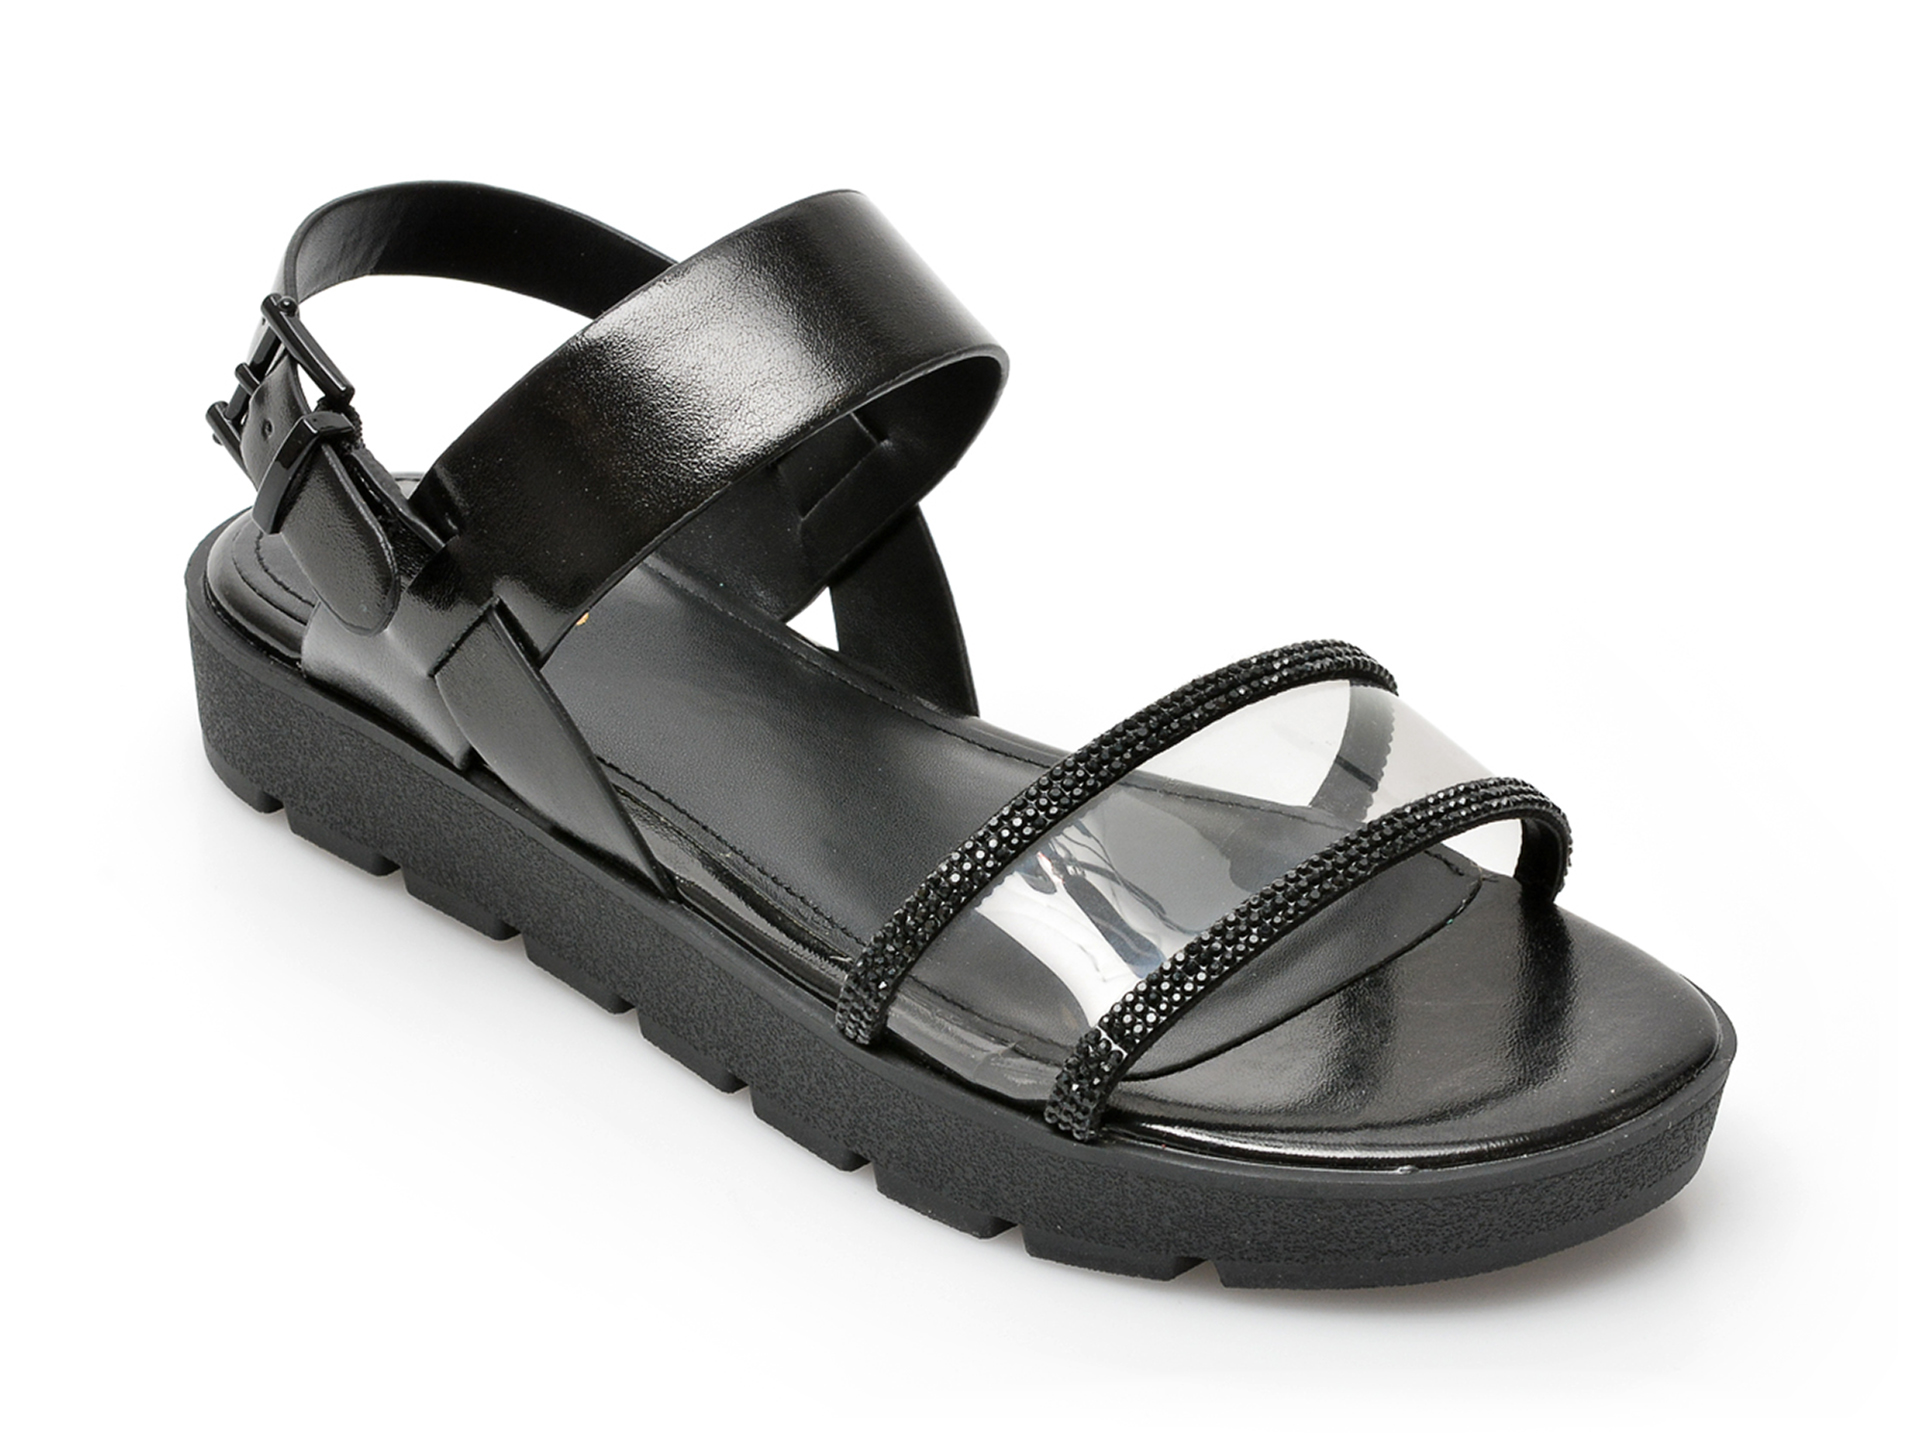 Sandale ALDO negre, HAILEY001, din piele ecologica Aldo